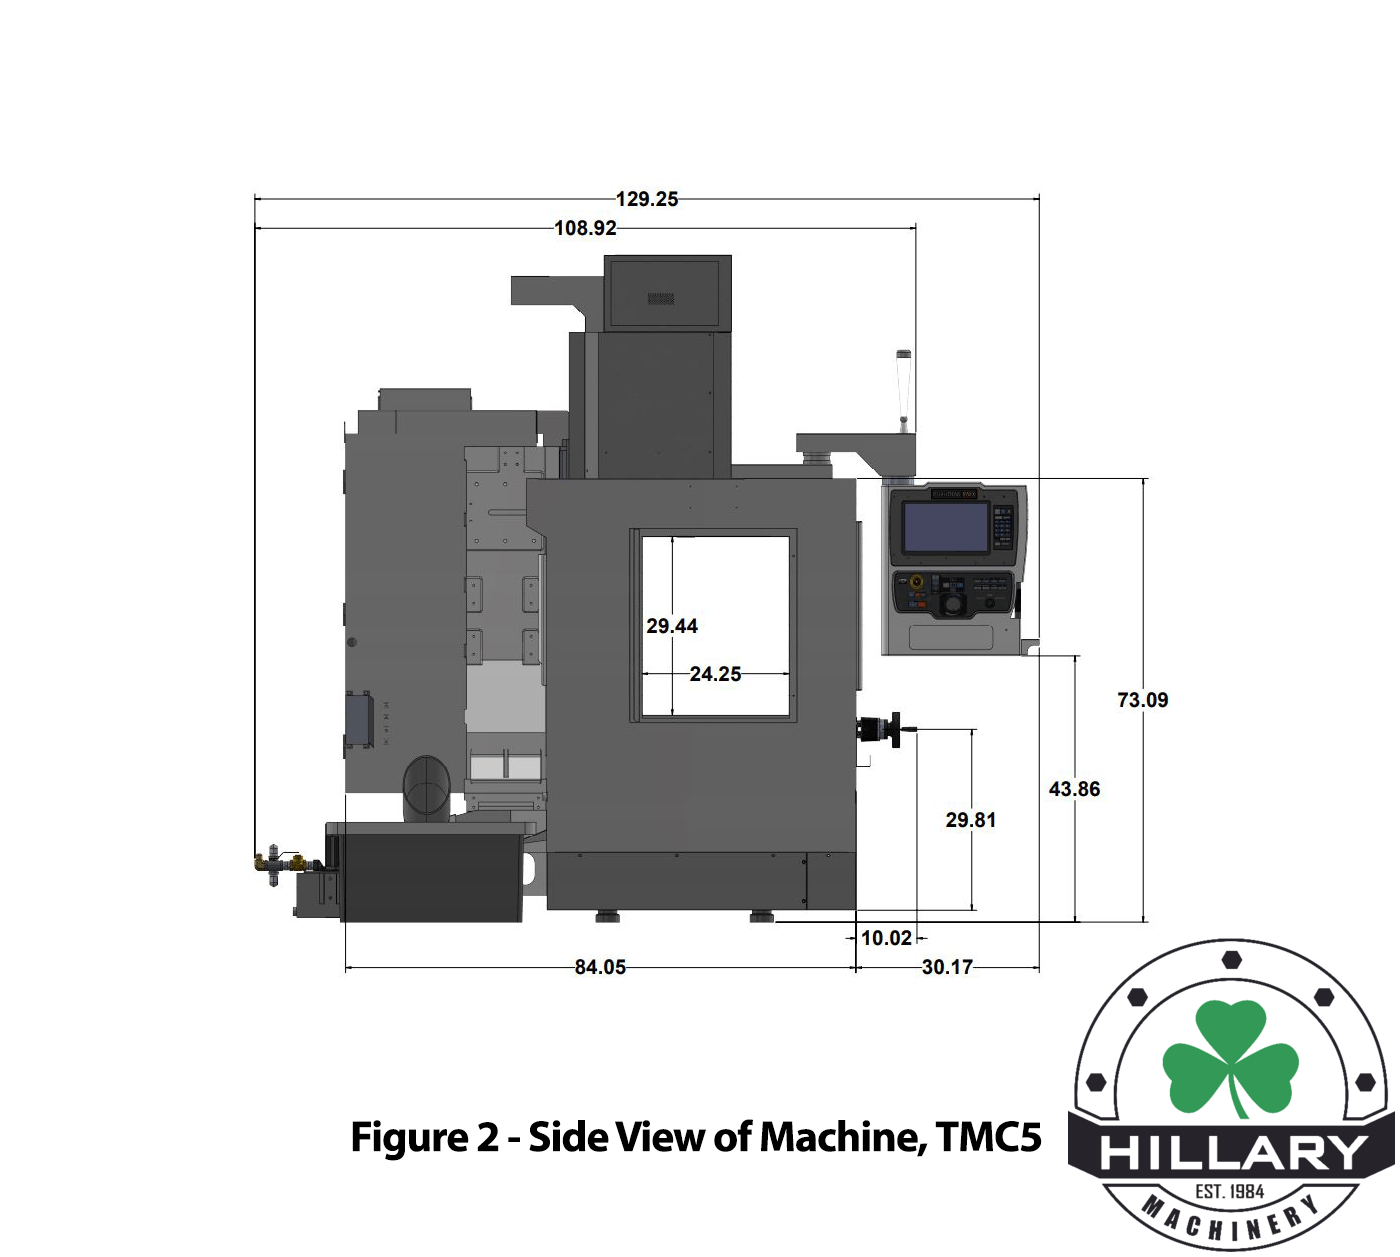 TRAK MACHINE TOOLS TMC5 Tool Room Mills | Hillary Machinery